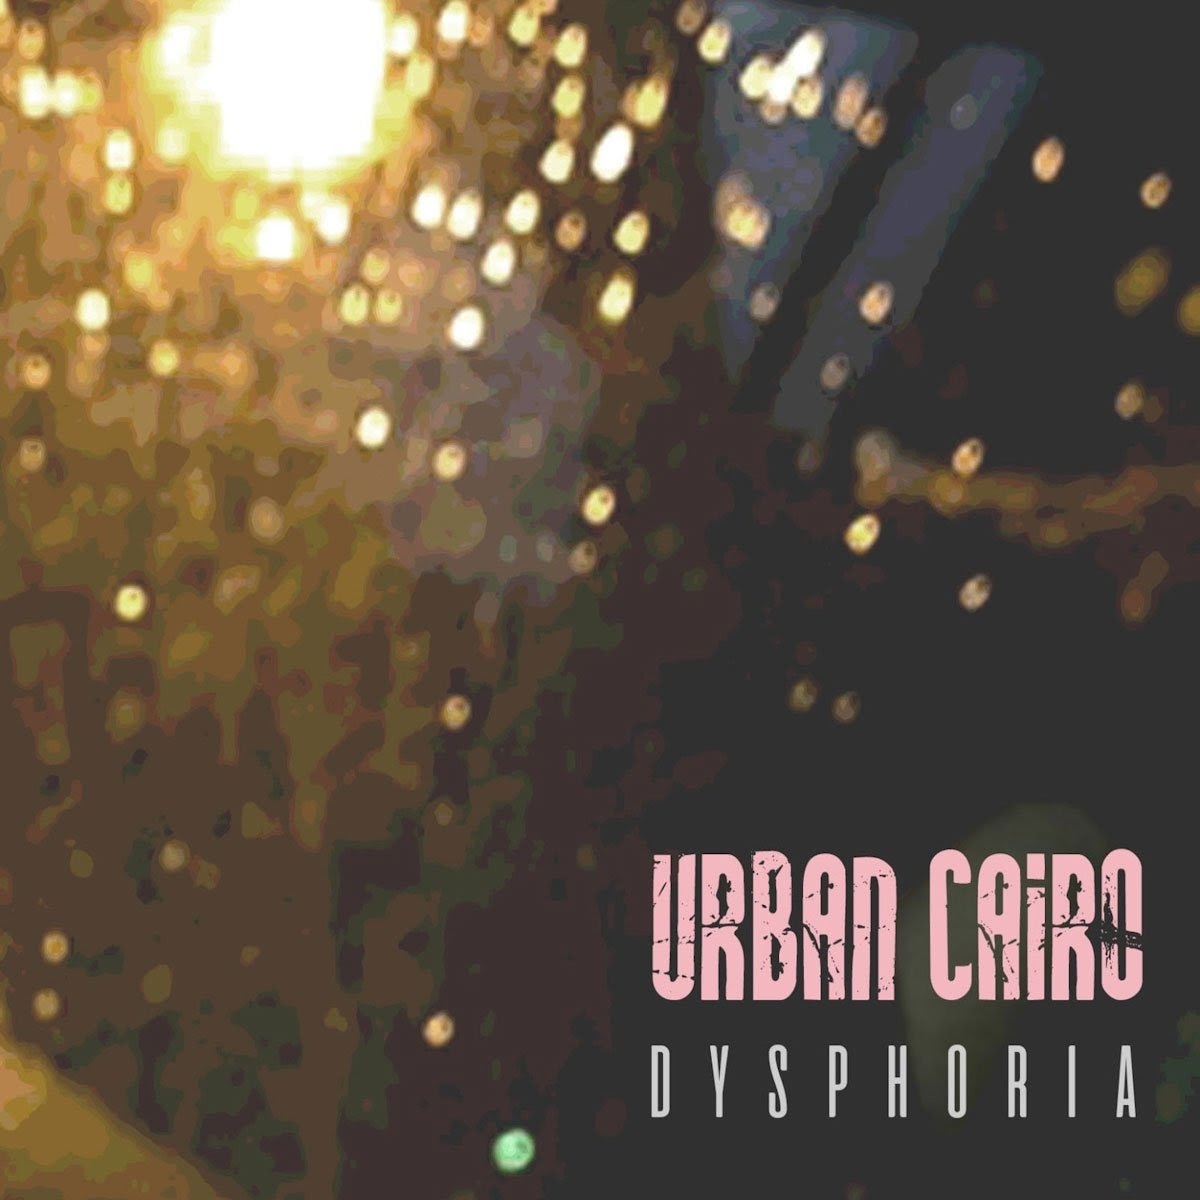 URBAN CAIRO: dal 28 giugno disponibile in radio e in digitale “DYSPHORIA” il nuovo singolo